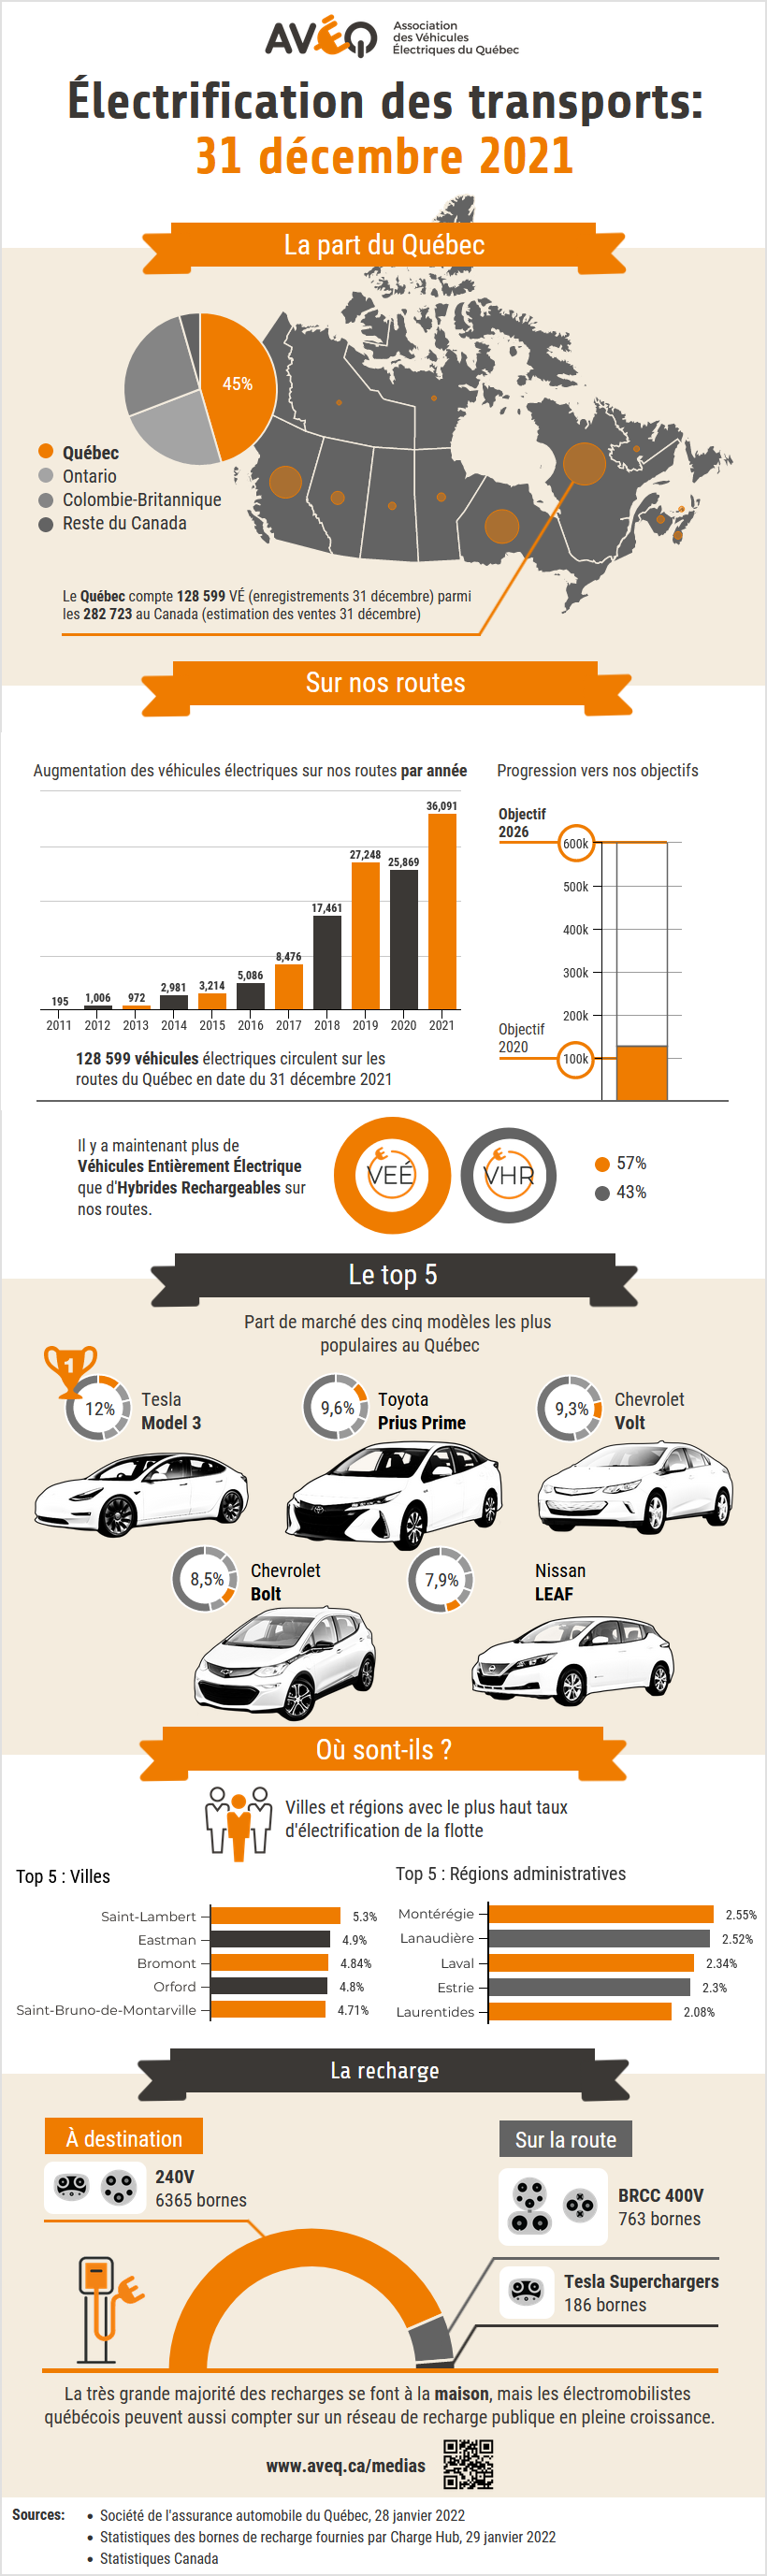 Automobile : Un recul de 8% des ventes par rapport à 2021